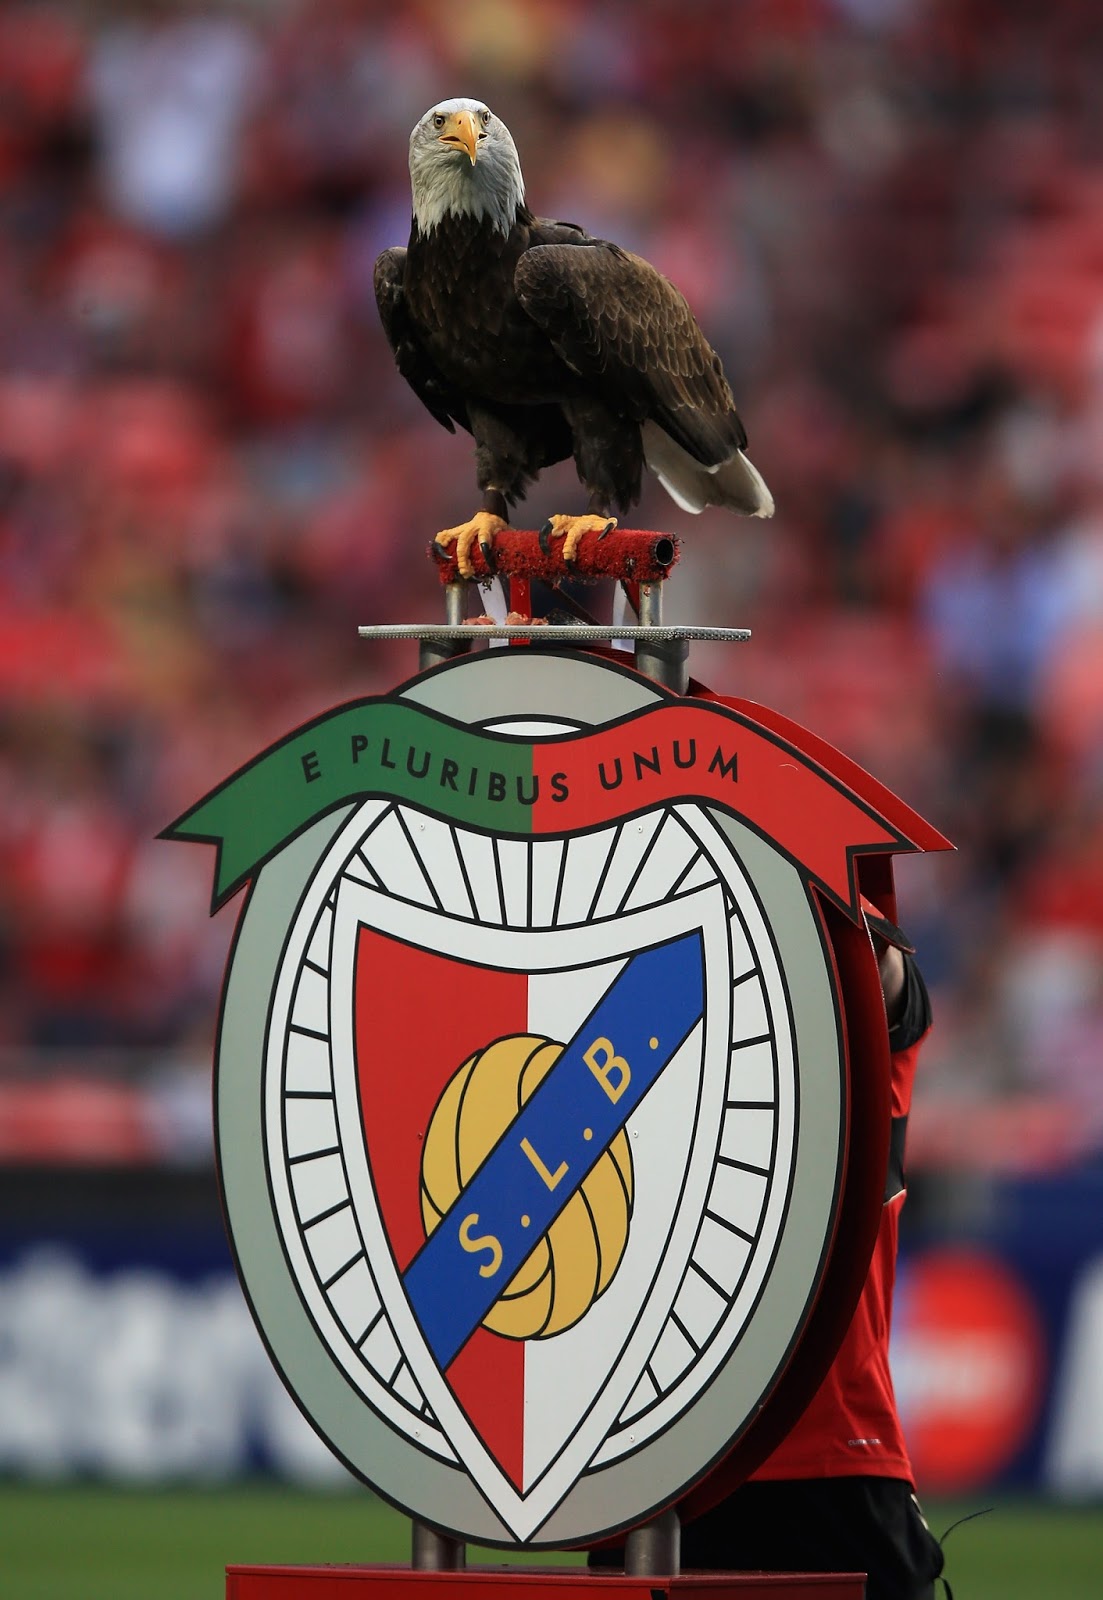 aguia do benfica - I love Portugal